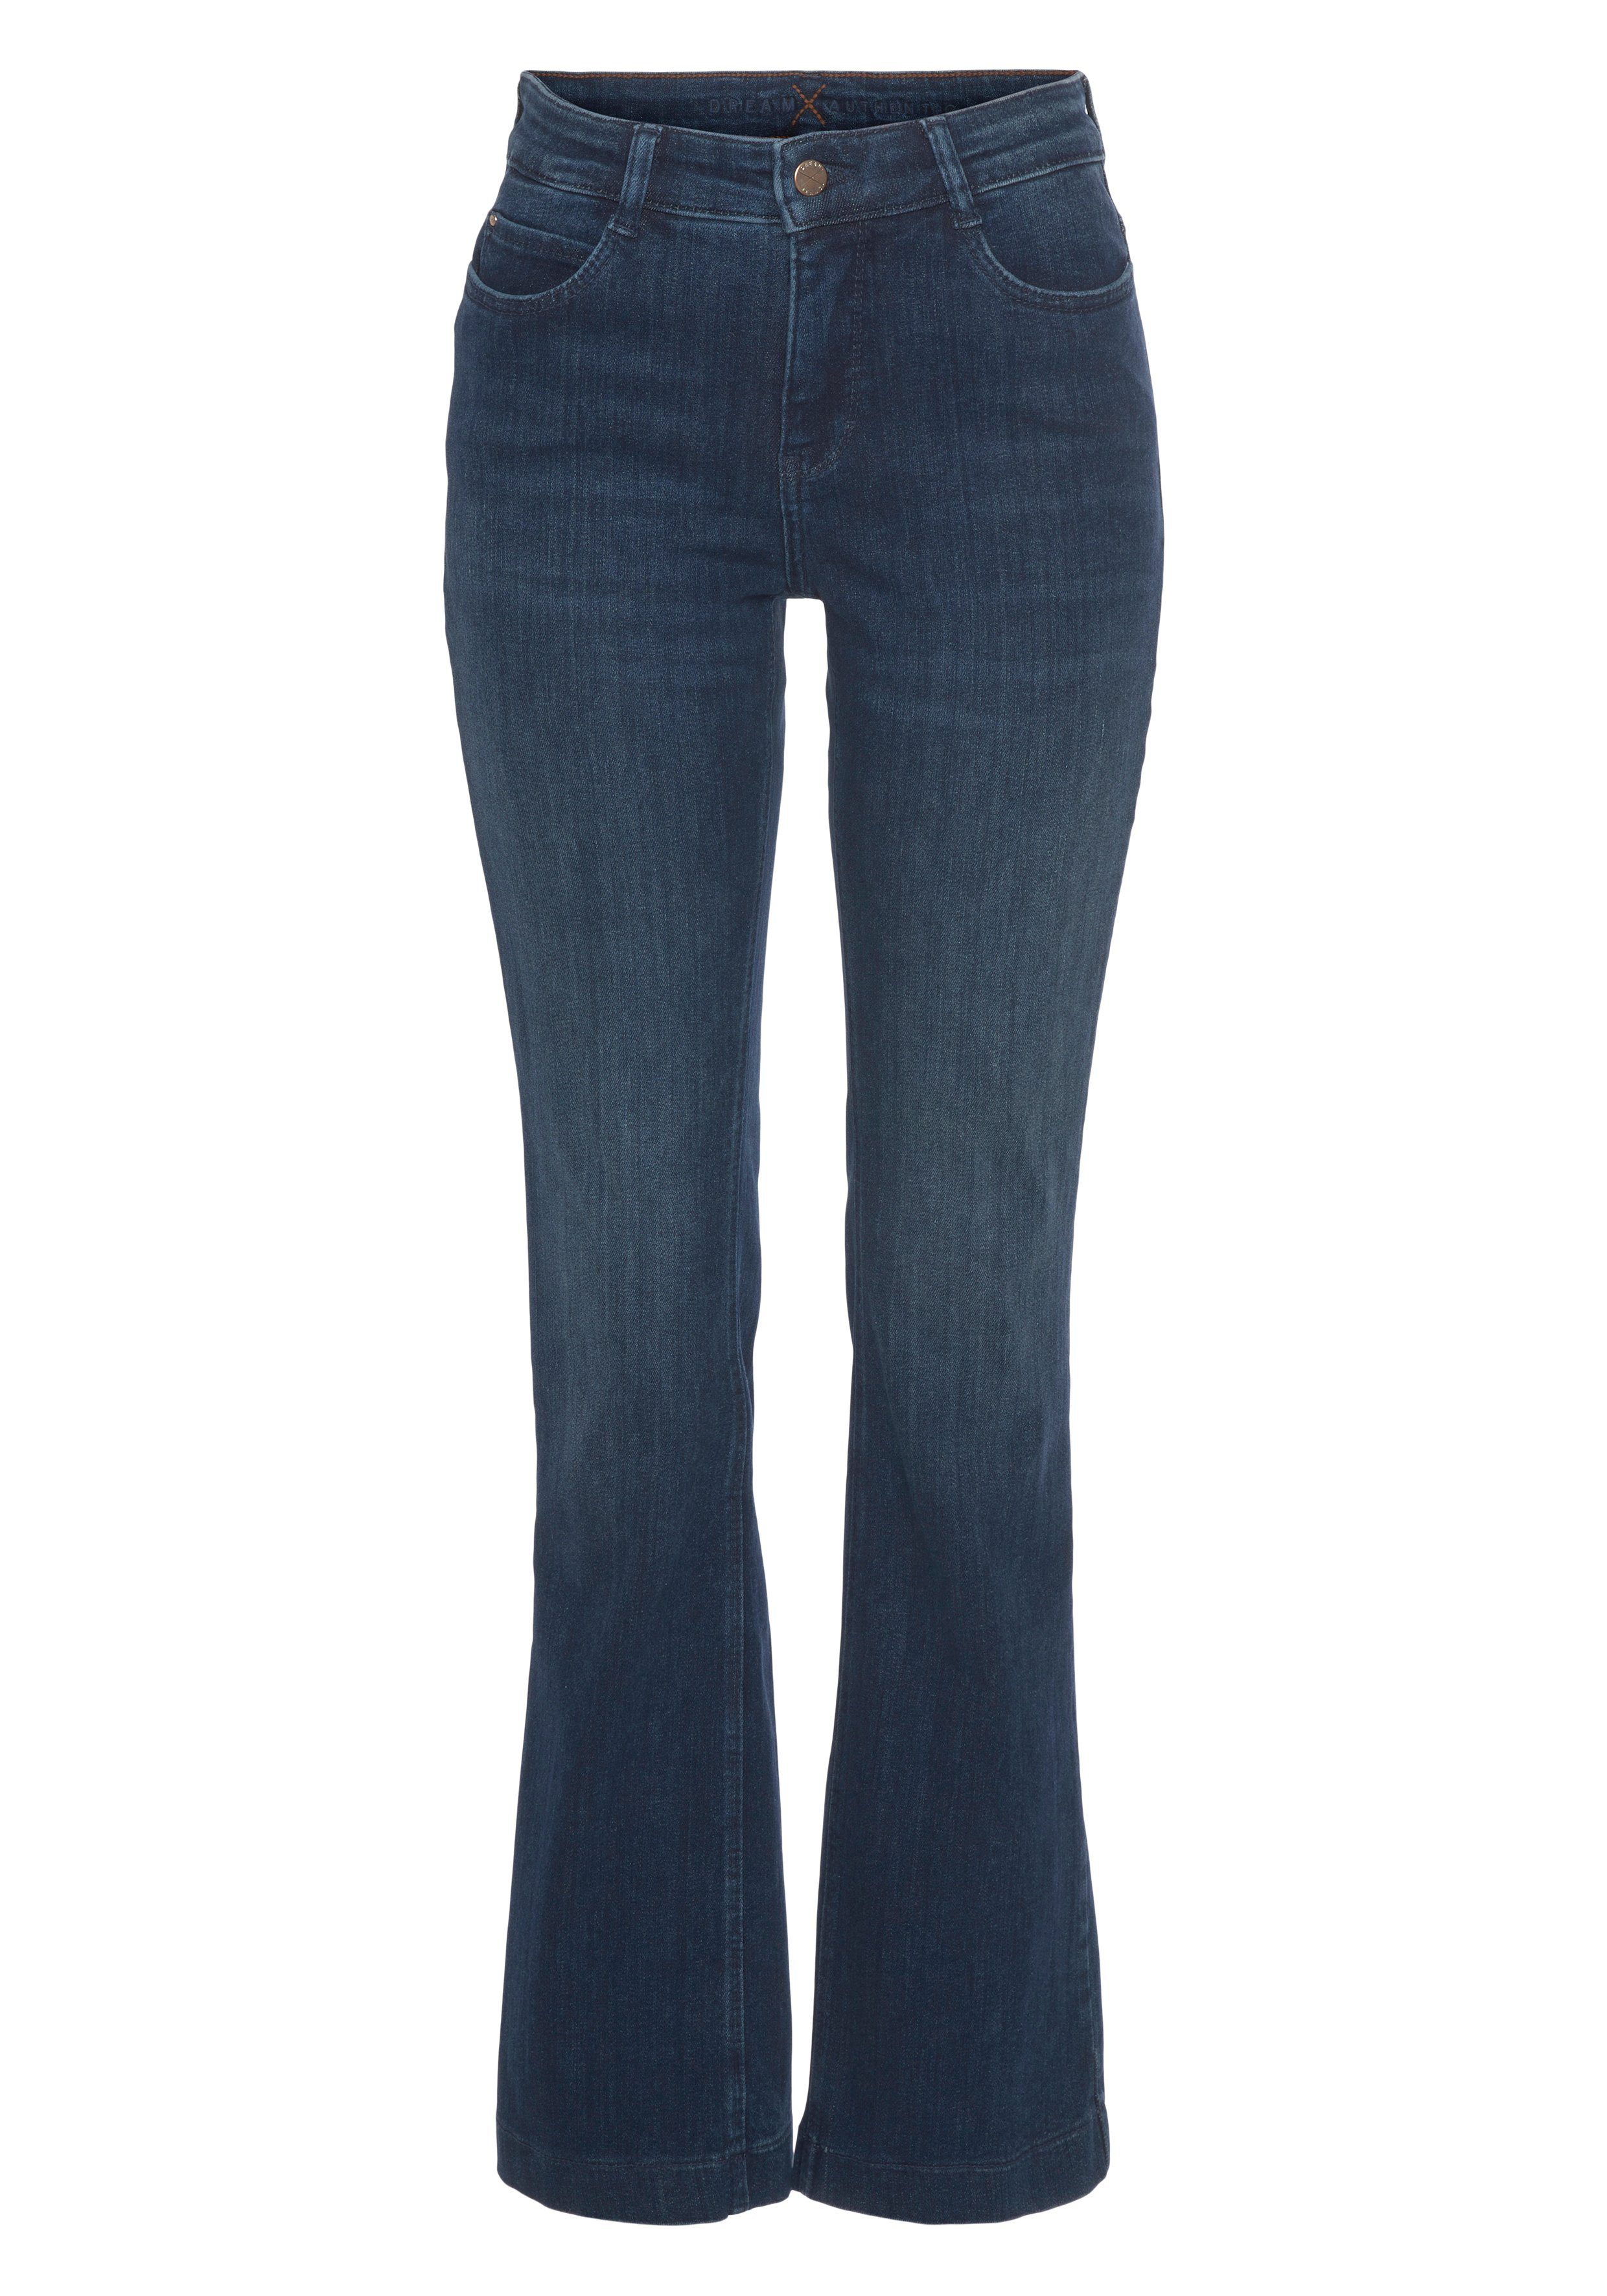 MAC Bootcut-Jeans Dream-Boot Gerade geschnitten cobald authentic Bein wash ausgestelltem dark blue mit leicht